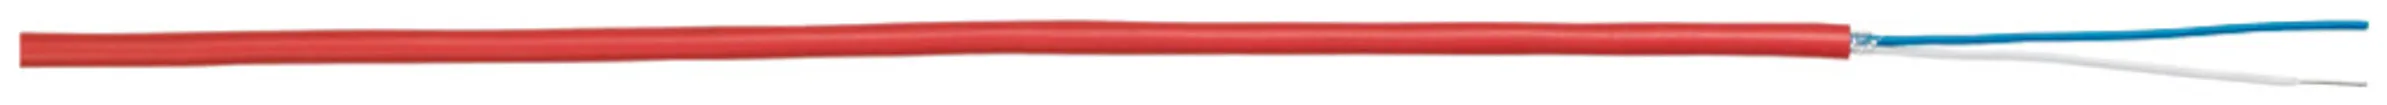 Câble de détection incendie G51, 1×2×0.8mm sans halogène rouge Cca Une longueur